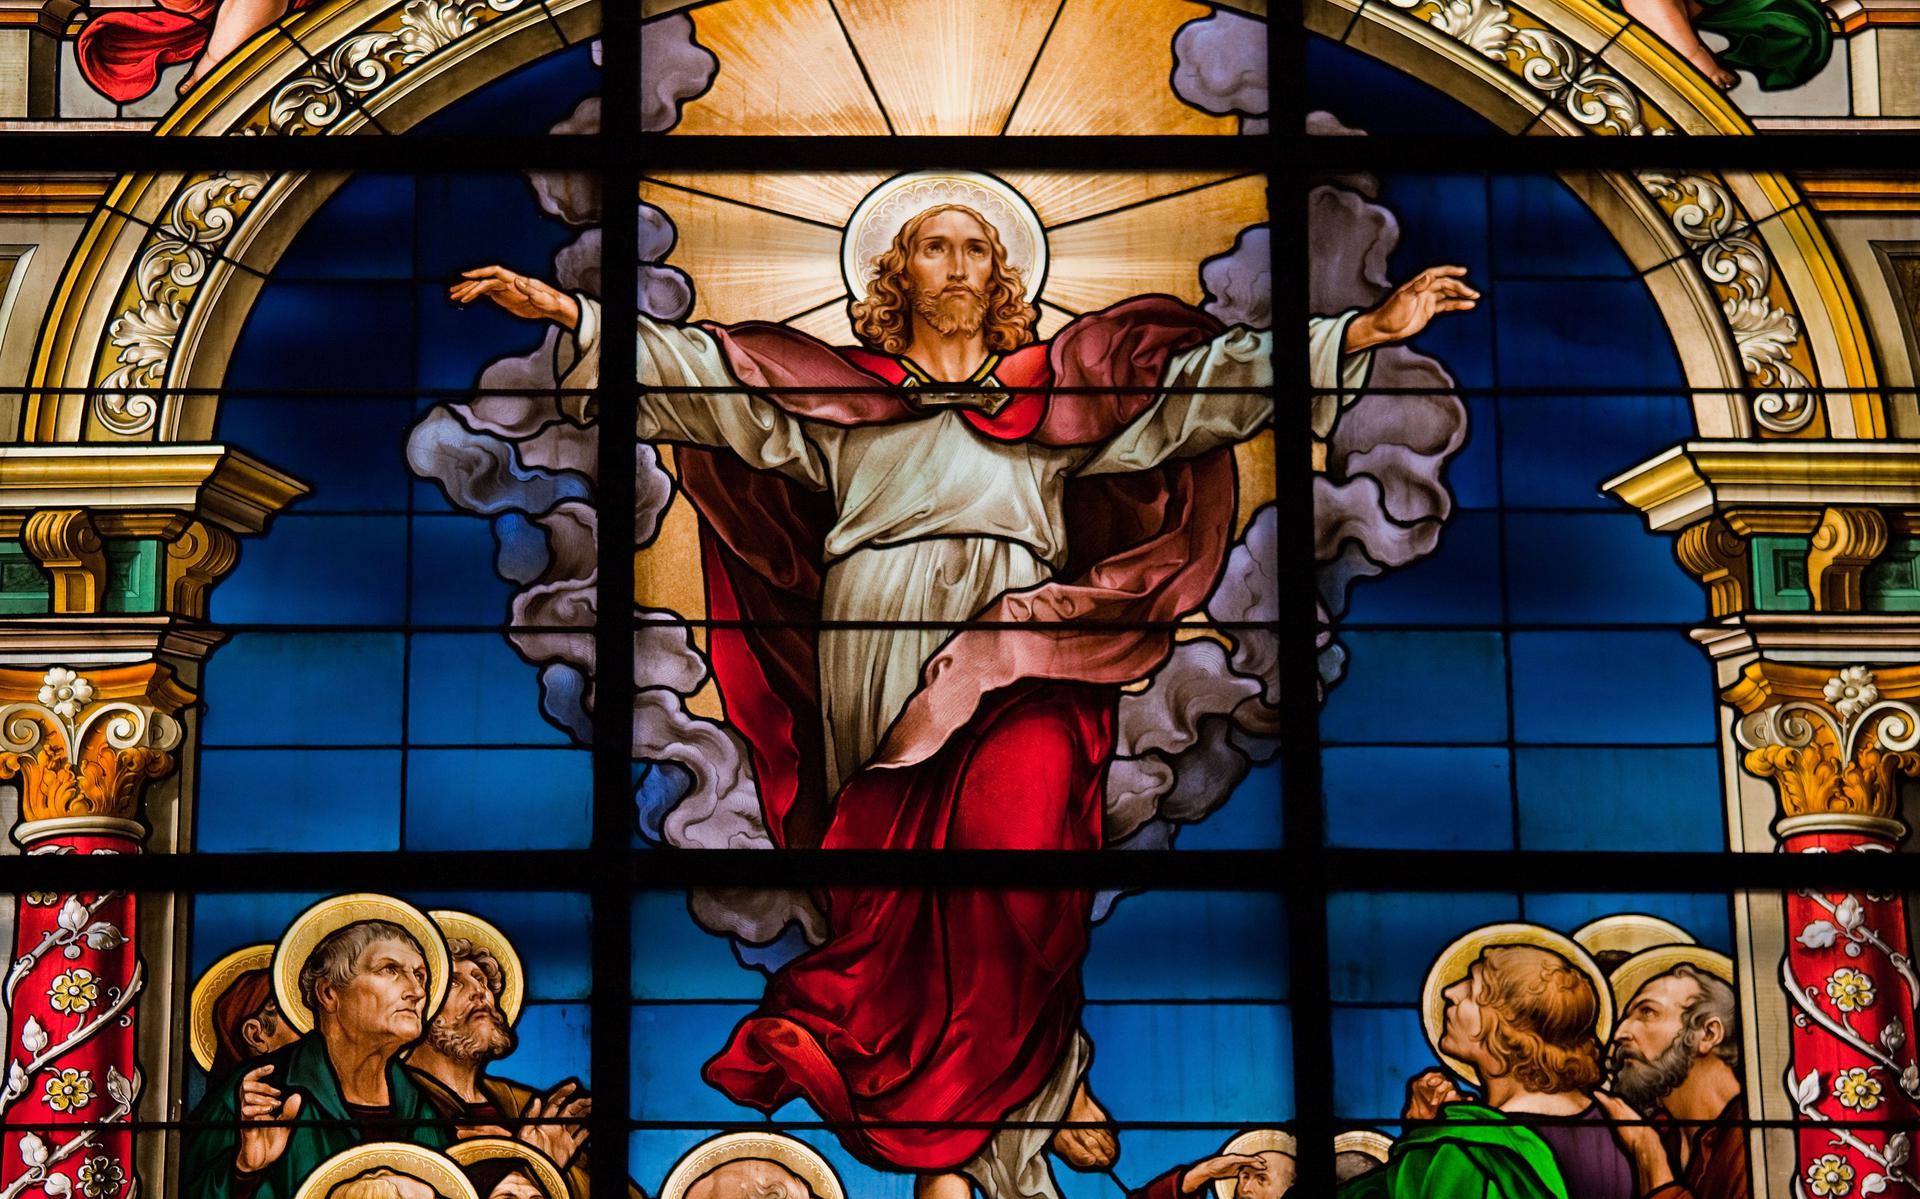 De opstanding van Jezus wordt gevierd op Paaszondag. 